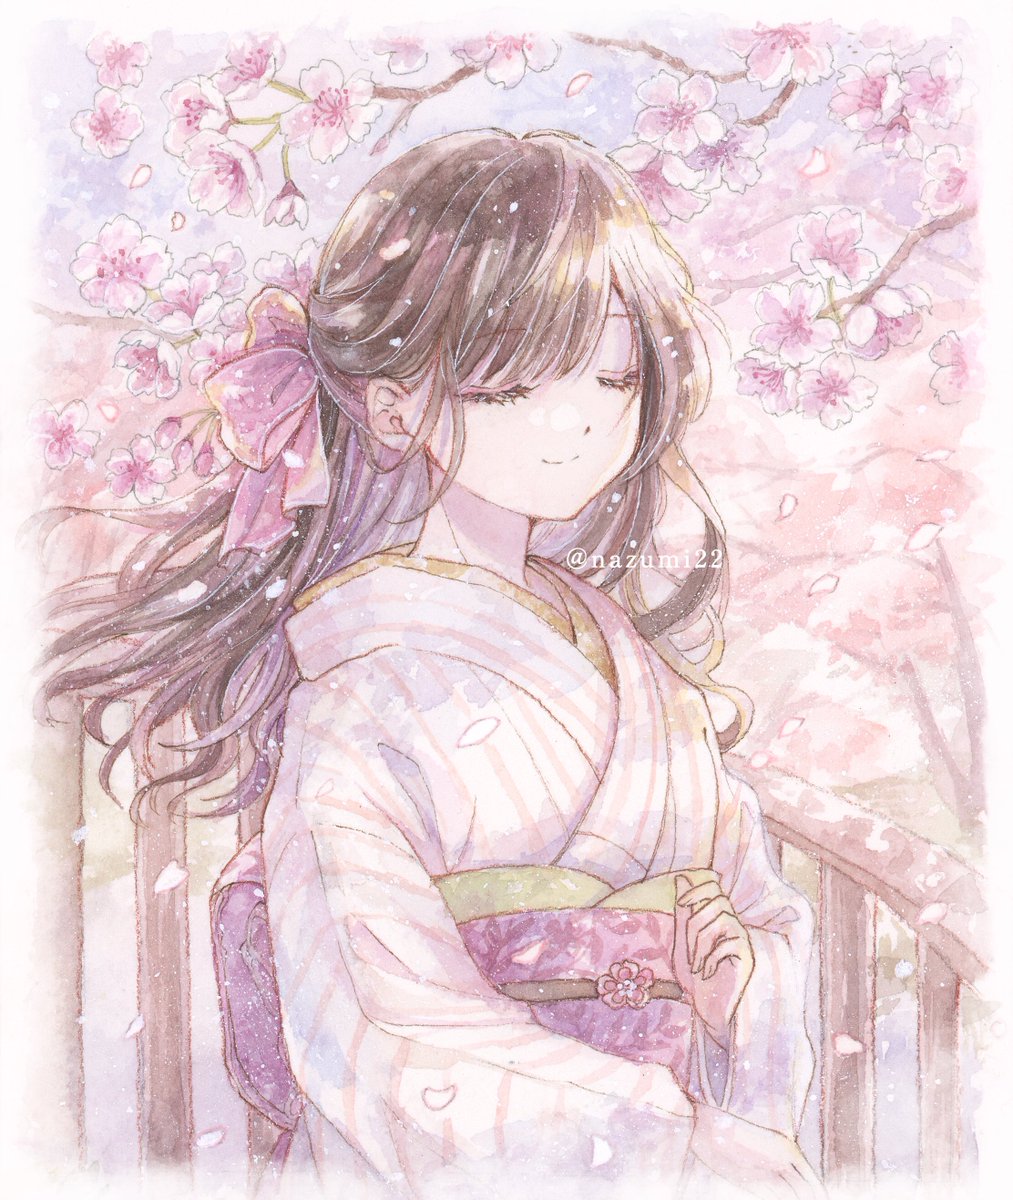 「桜色にとける#透明水彩 #アナログ絵 #oc 」|なずみ紫帆のイラスト